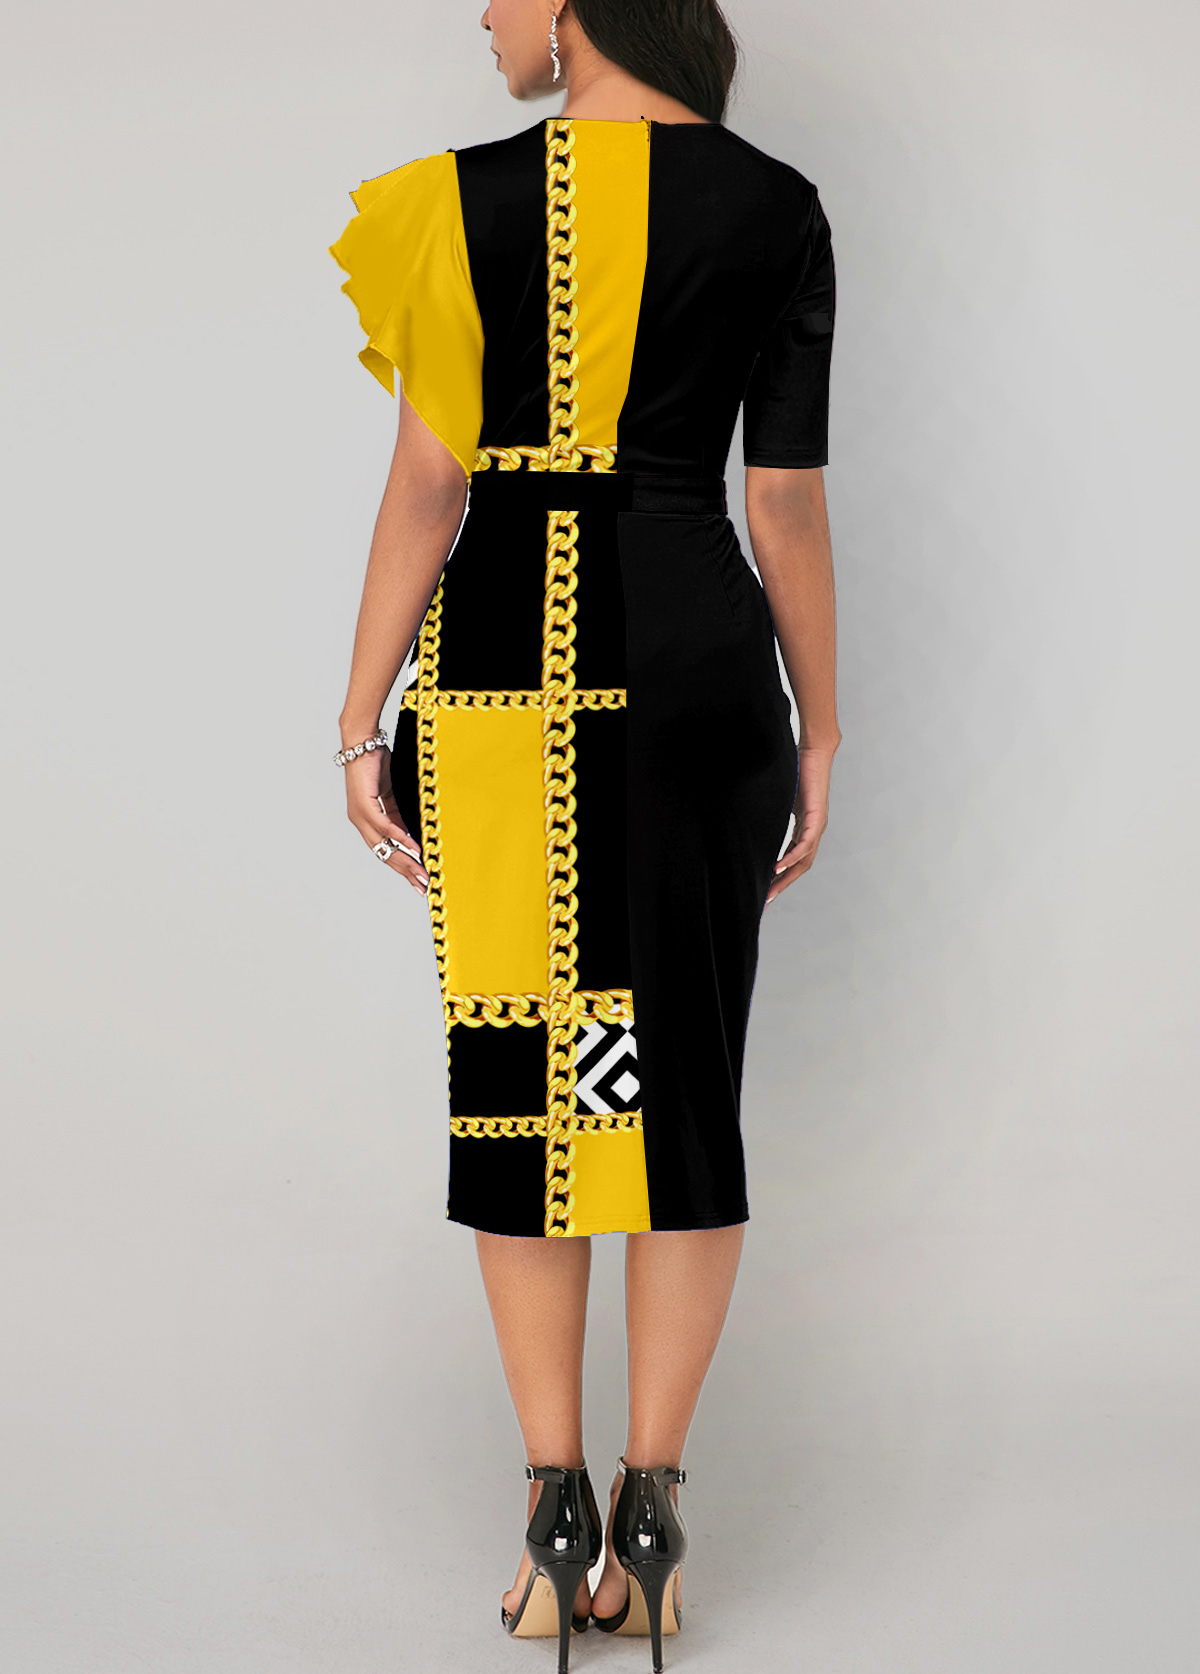 Geometric Print Cut Out Yellow Bodycon Dress